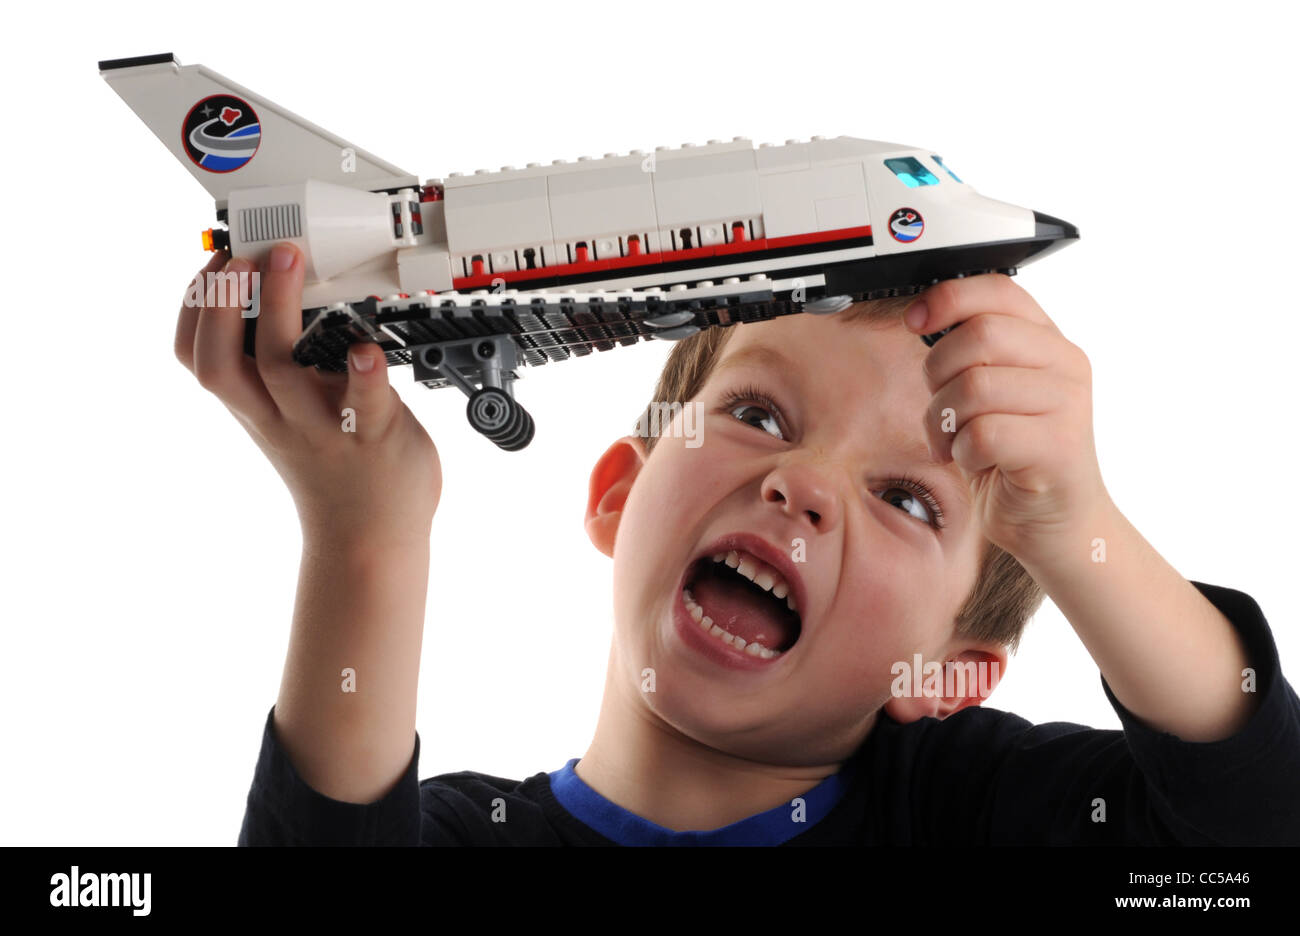 Lego, bambino che gioca con Lego space shuttle Foto Stock